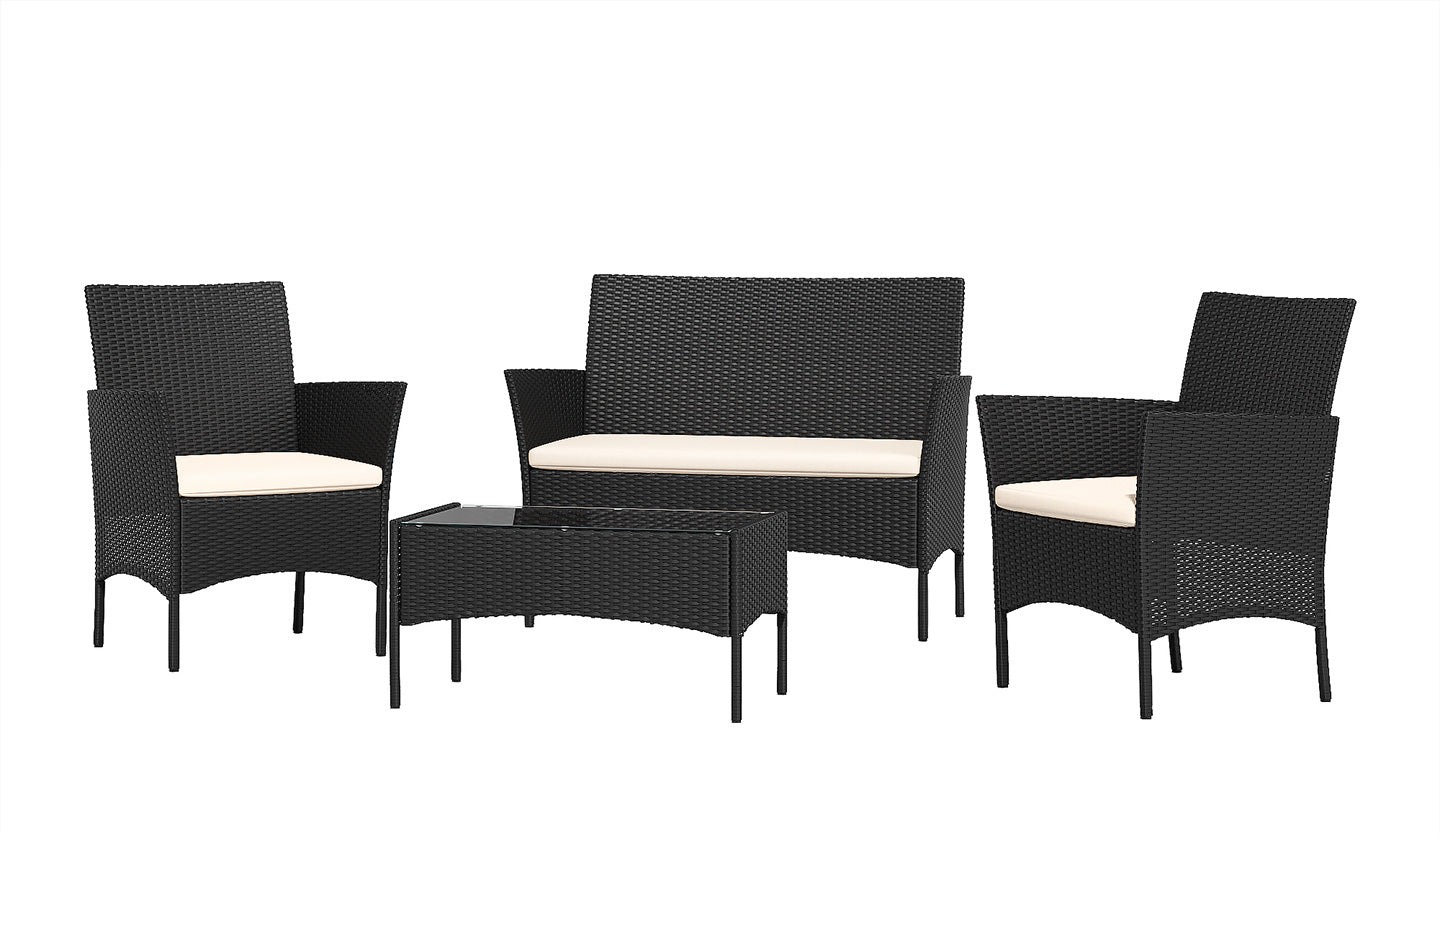 Ensemble de meubles de jardin en rotin 4 places avec 2 chaises simples, 1 canapé double et 1 table